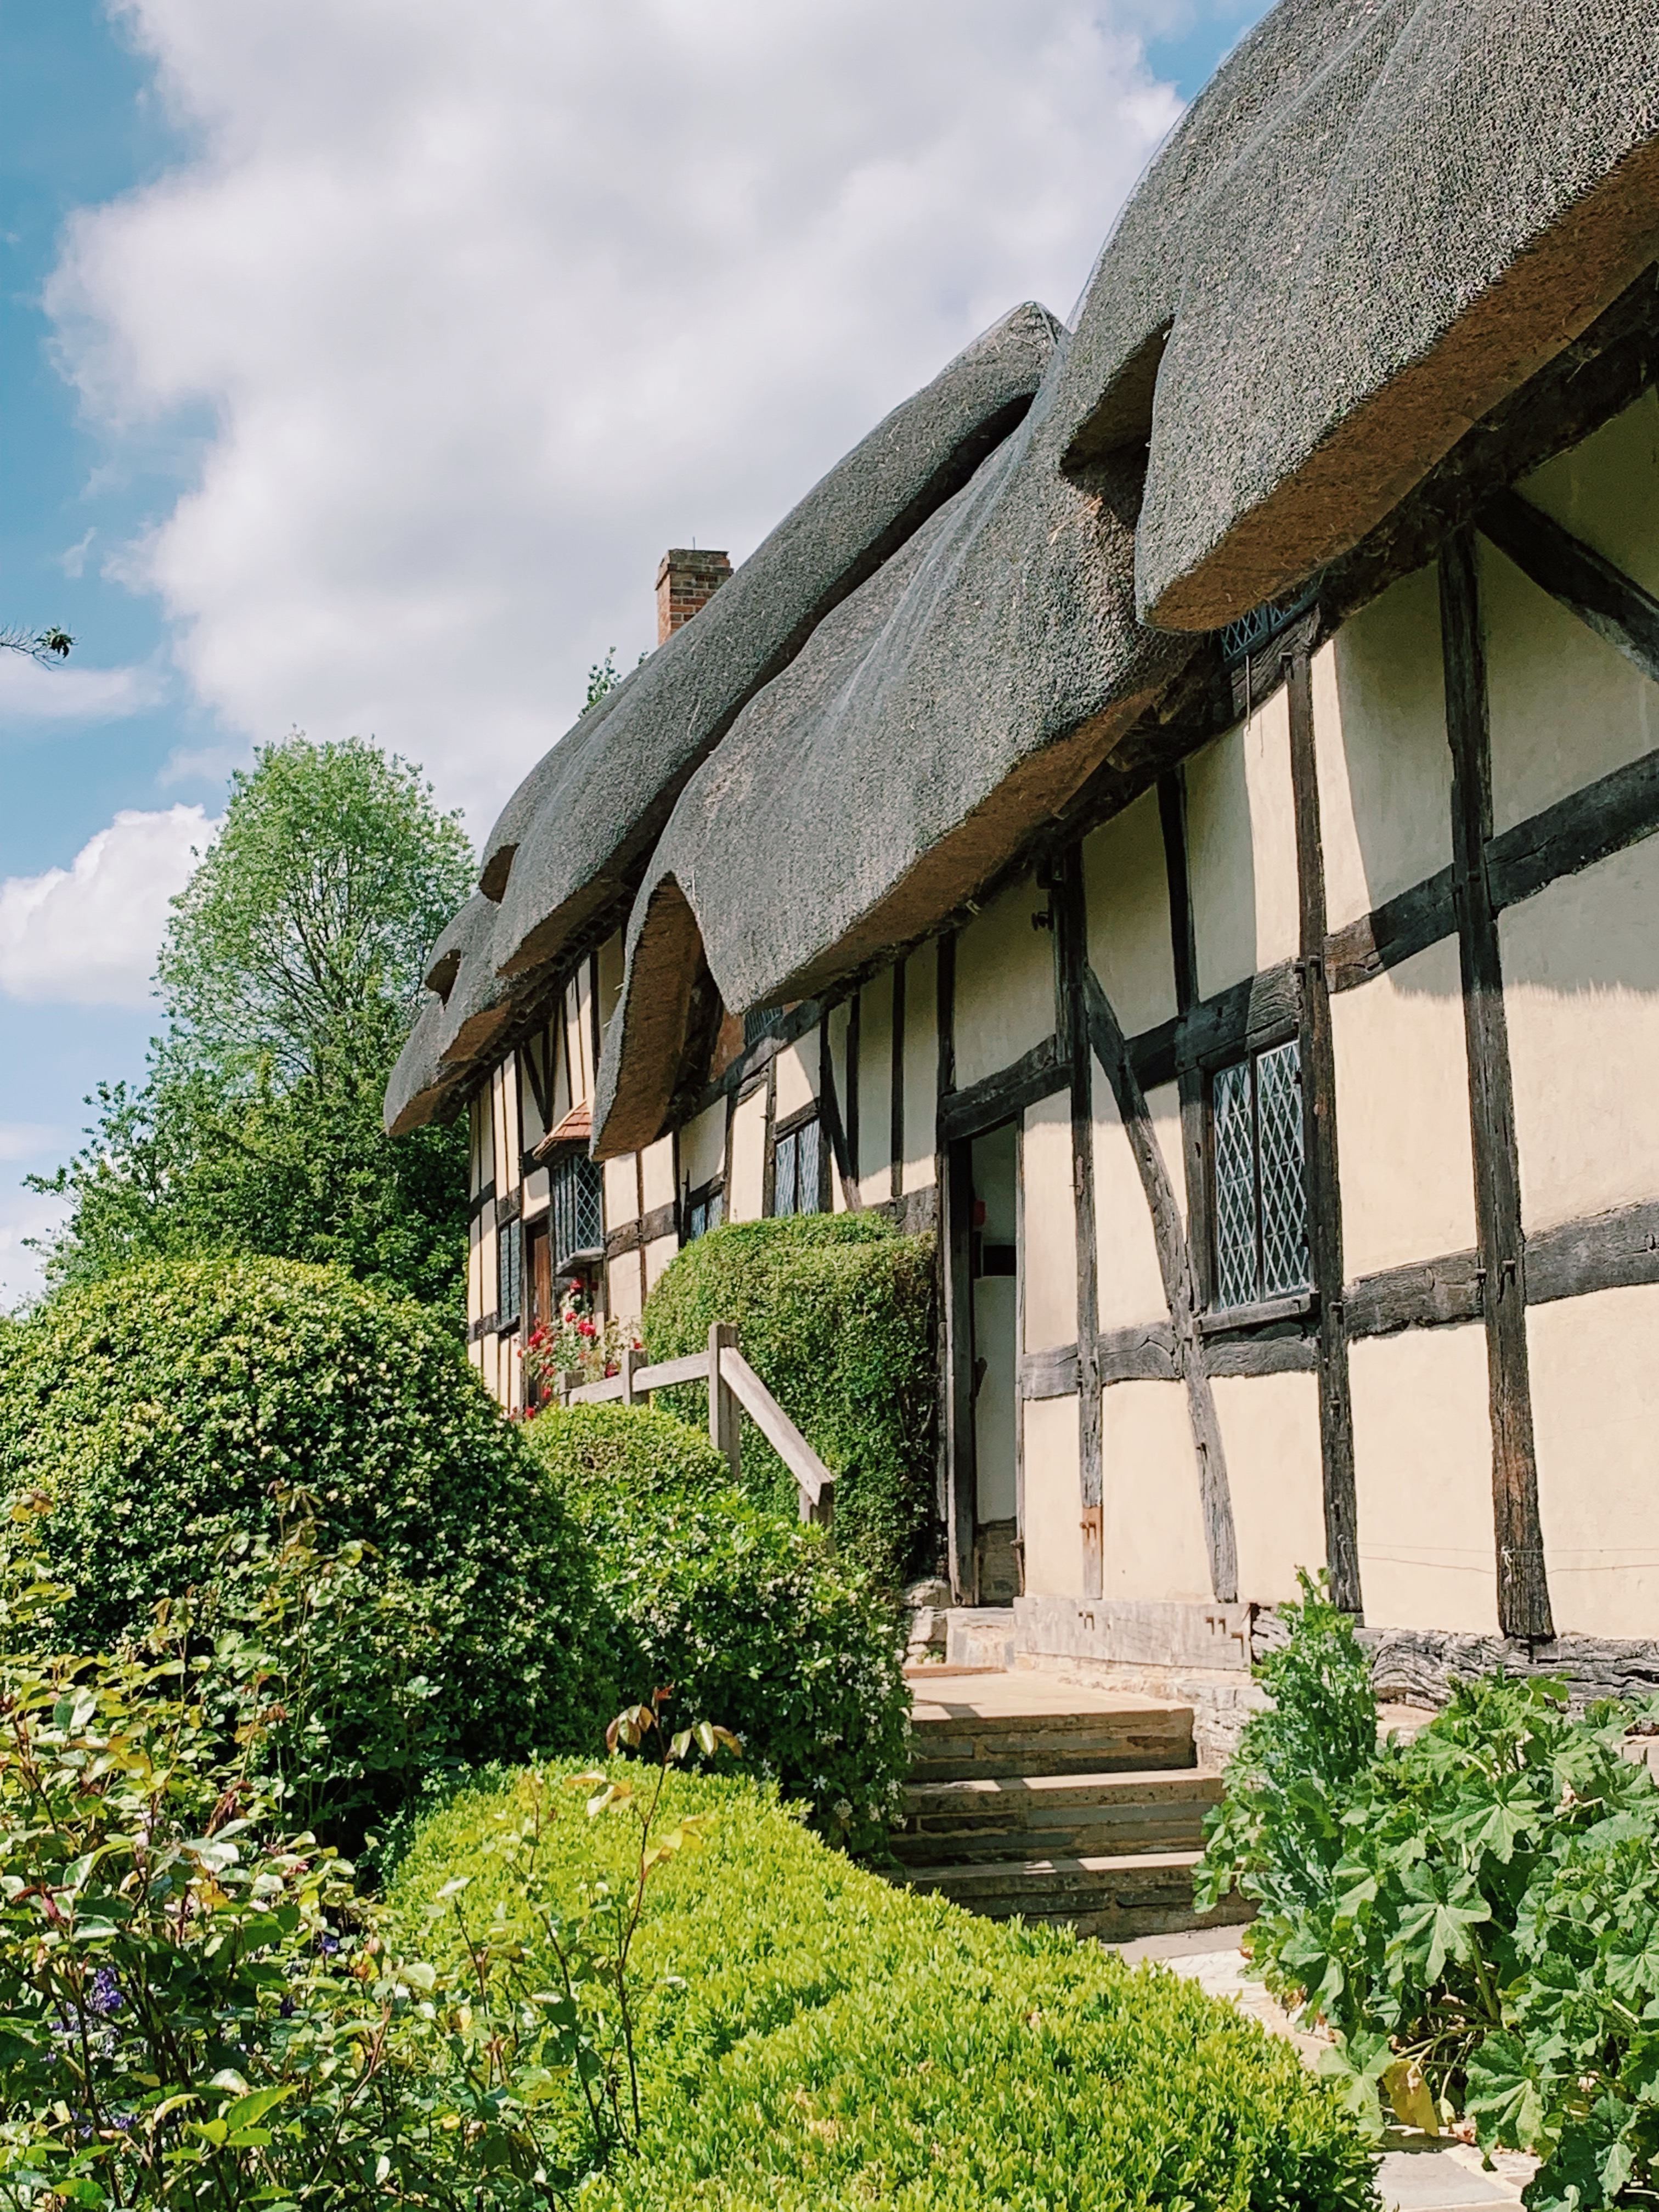 Anne Hathaway's Cottage in Stratford Upon Avon